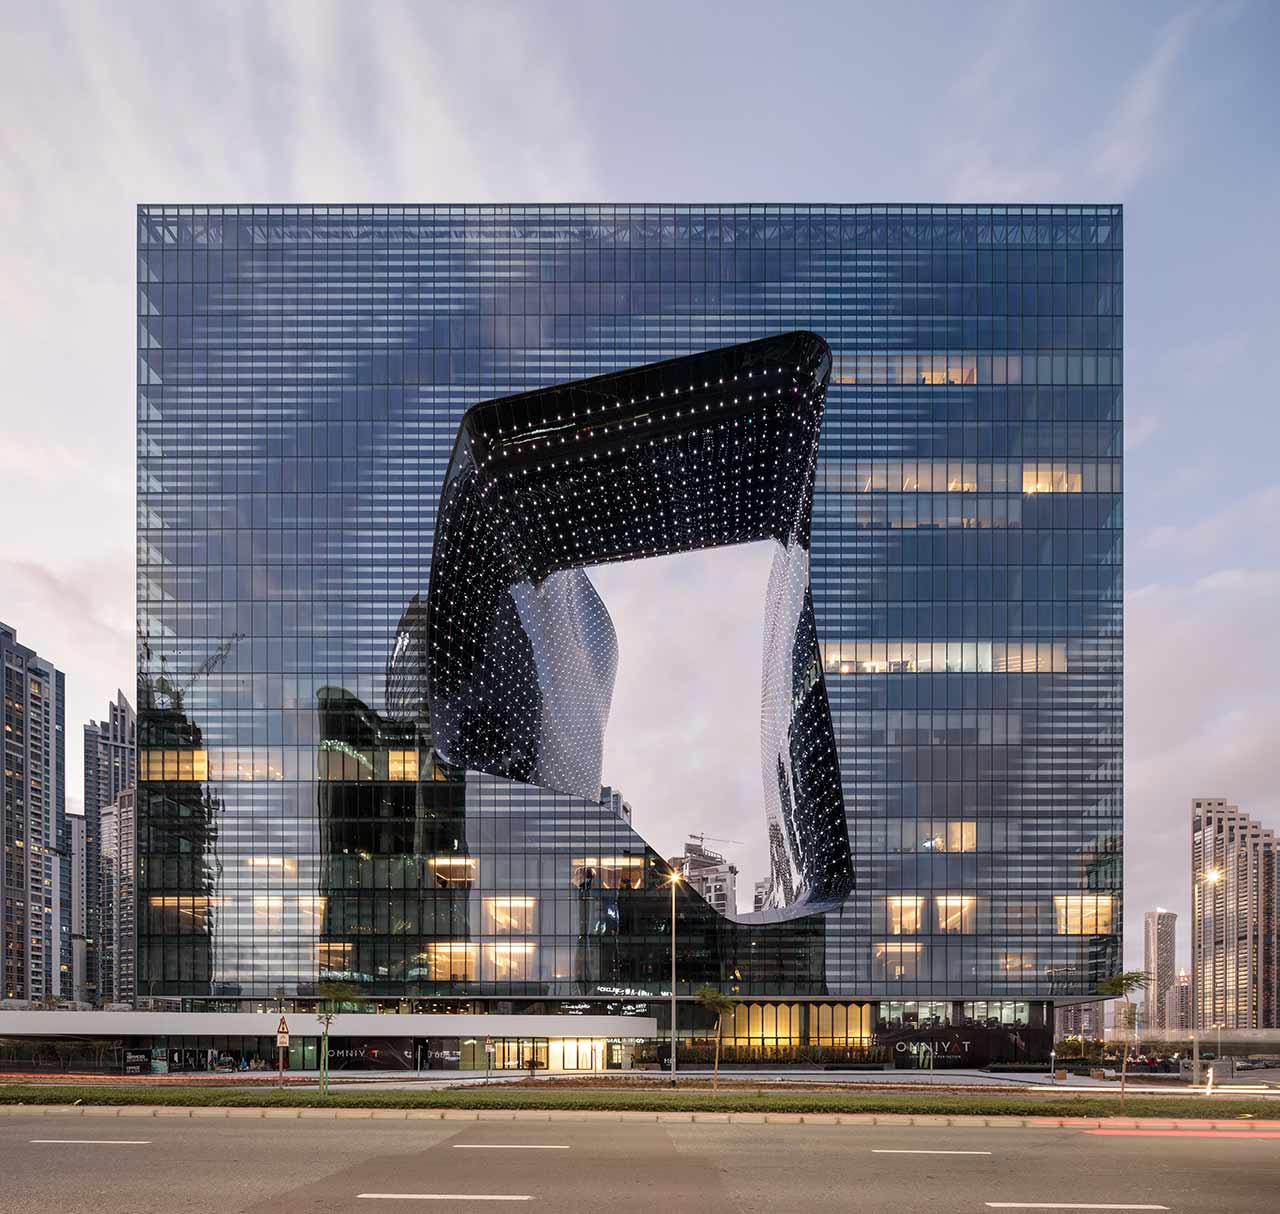 Das Foto zeigt The Opus in Dubai, ein modernes Gebäude mit einer einzigartigen, beleuchteten Aussparung in der Mitte, entworfen von Zaha Hadid.